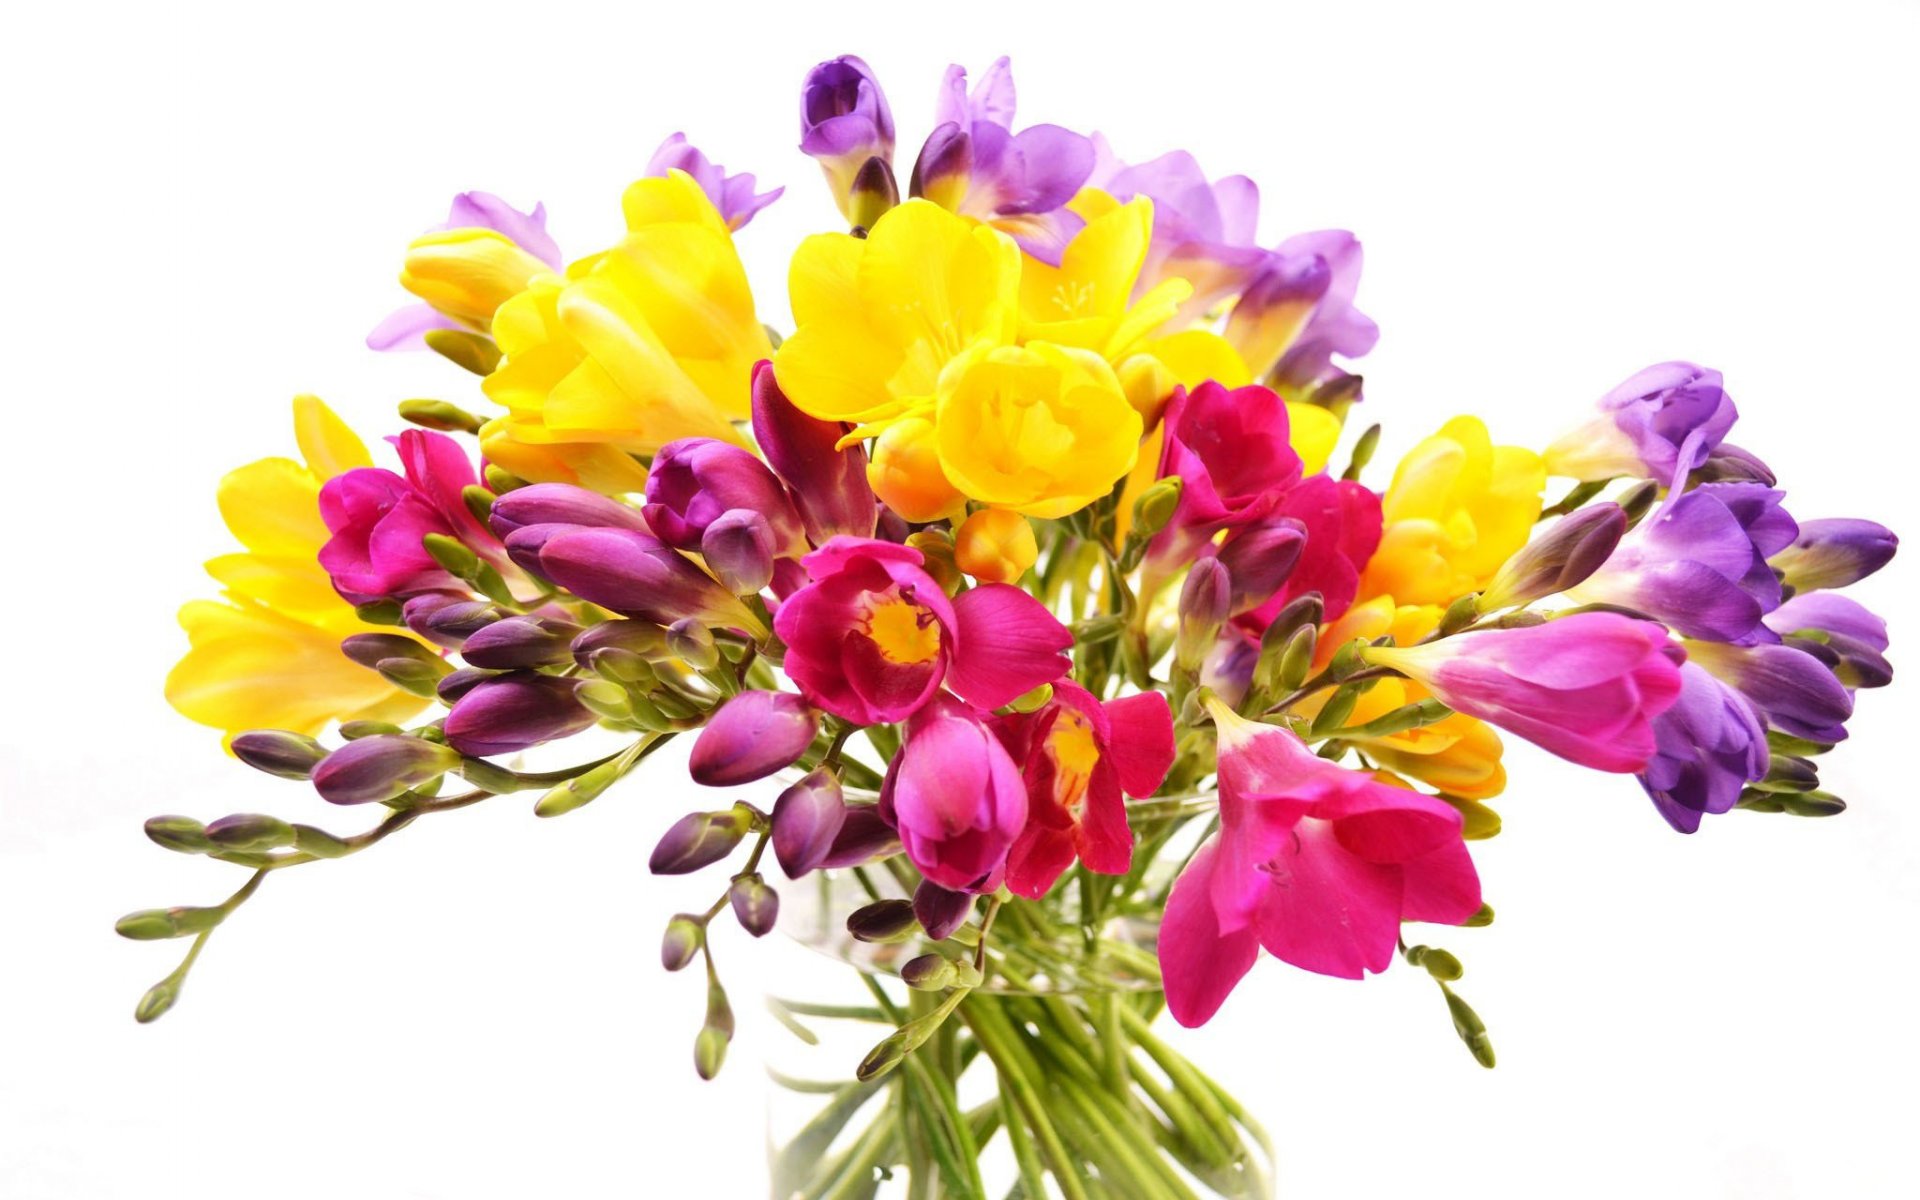 Скачать обои бесплатно Цветок, Цвета, Ваза, Красочный, Весна, Тюльпан, Желтый Цветок, Фиолетовый Цветок, Сделано Человеком картинка на рабочий стол ПК